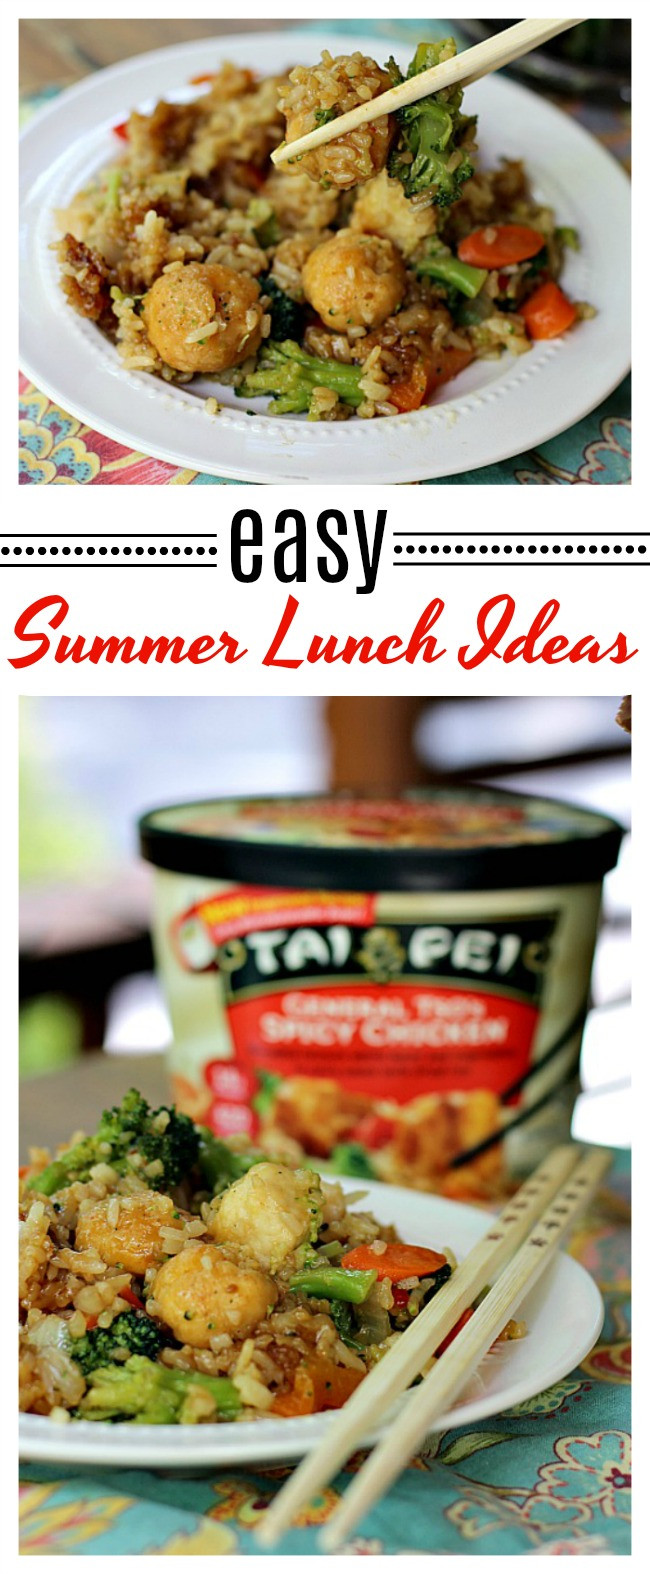 Summer Luncheon Menu Ideas
 Easy Summer Lunch Ideas Mom Unleashed